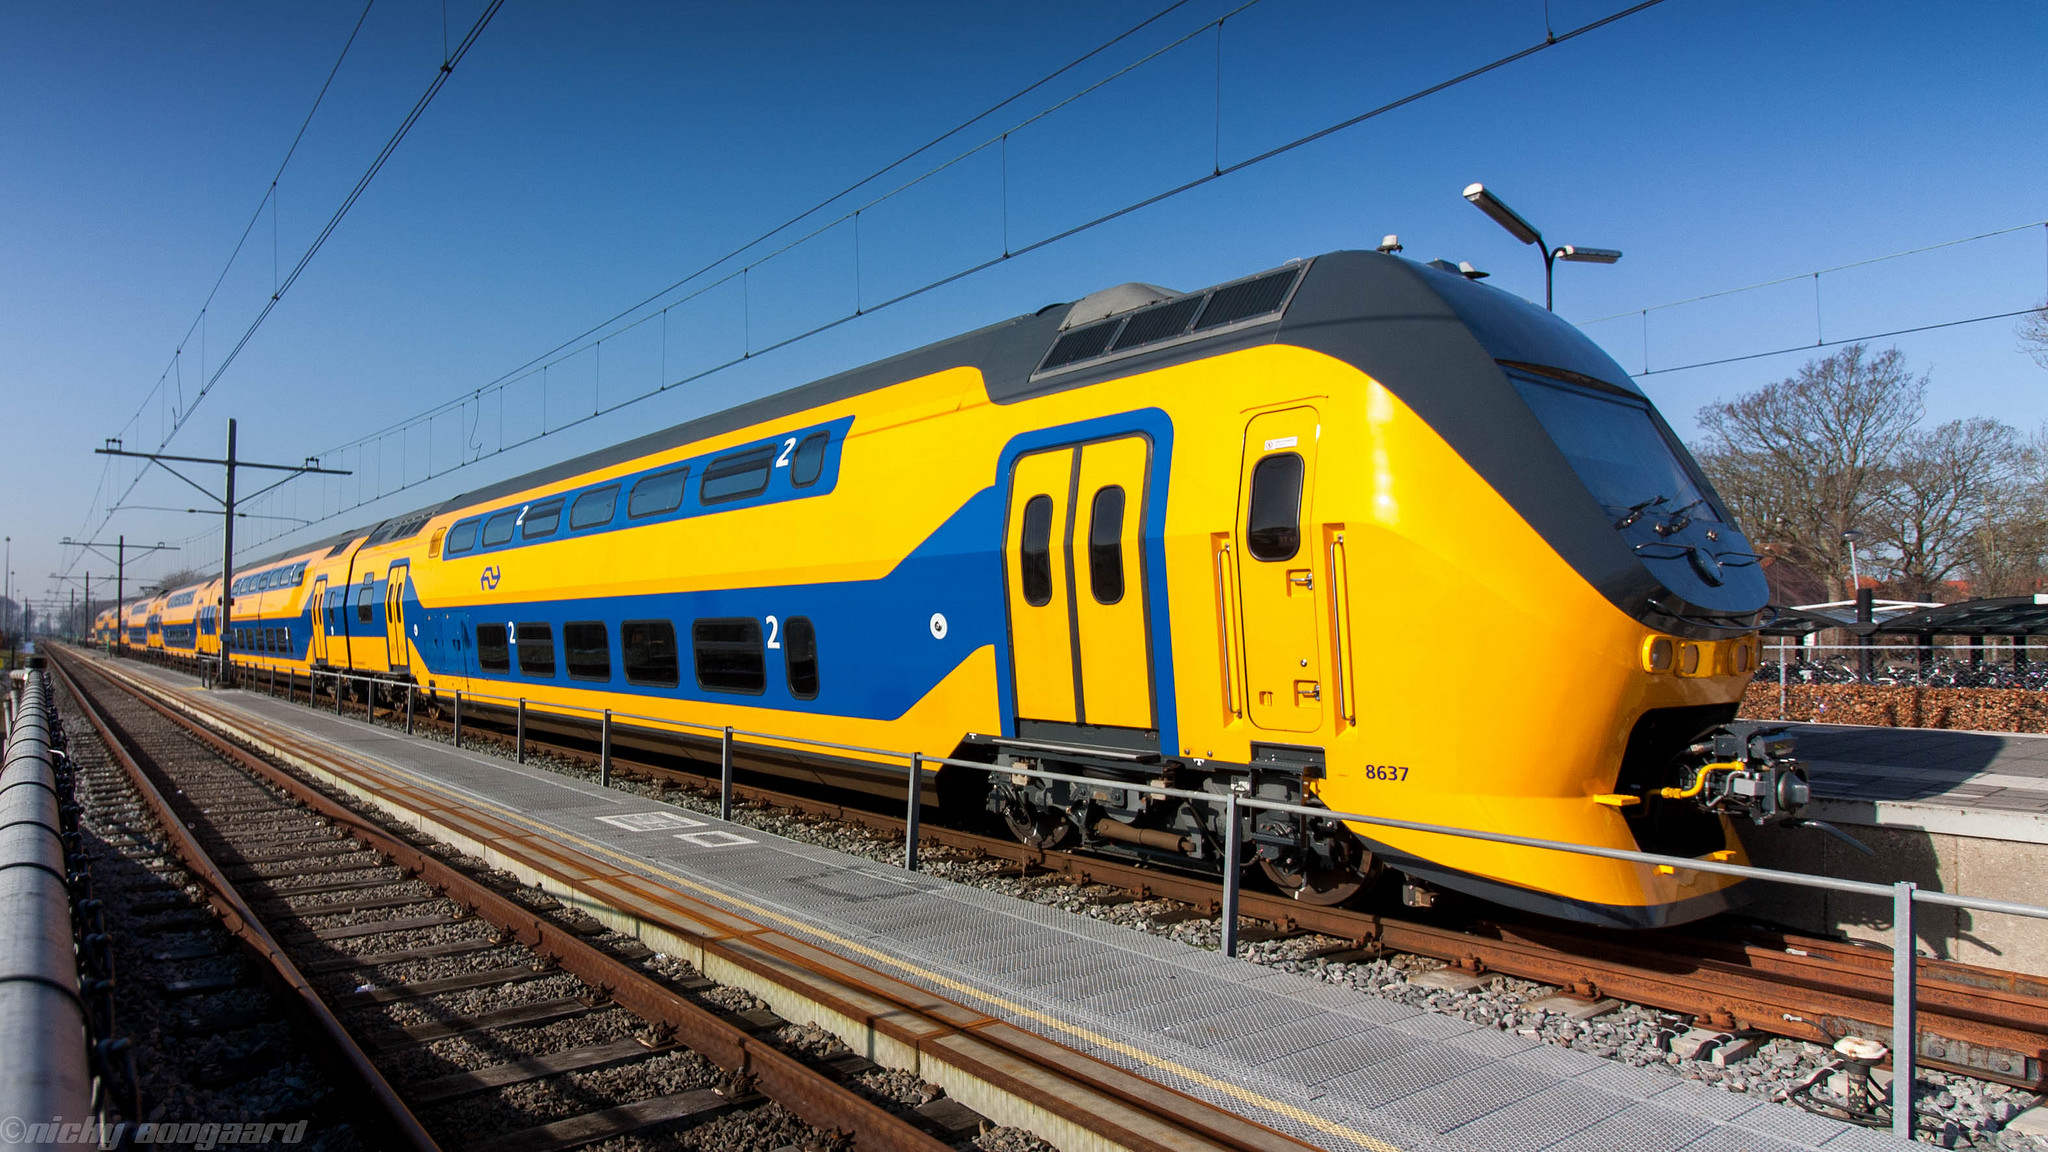 ที่เที่ยวเนเธอร์แลนด์ ท่องเที่ยวรอบโลก ประเทศเนเธอร์แลนด์ รถไฟฟ้าพลังงานจากกังหันลม เกร็ดความรู้ เรื่องน่ารู้